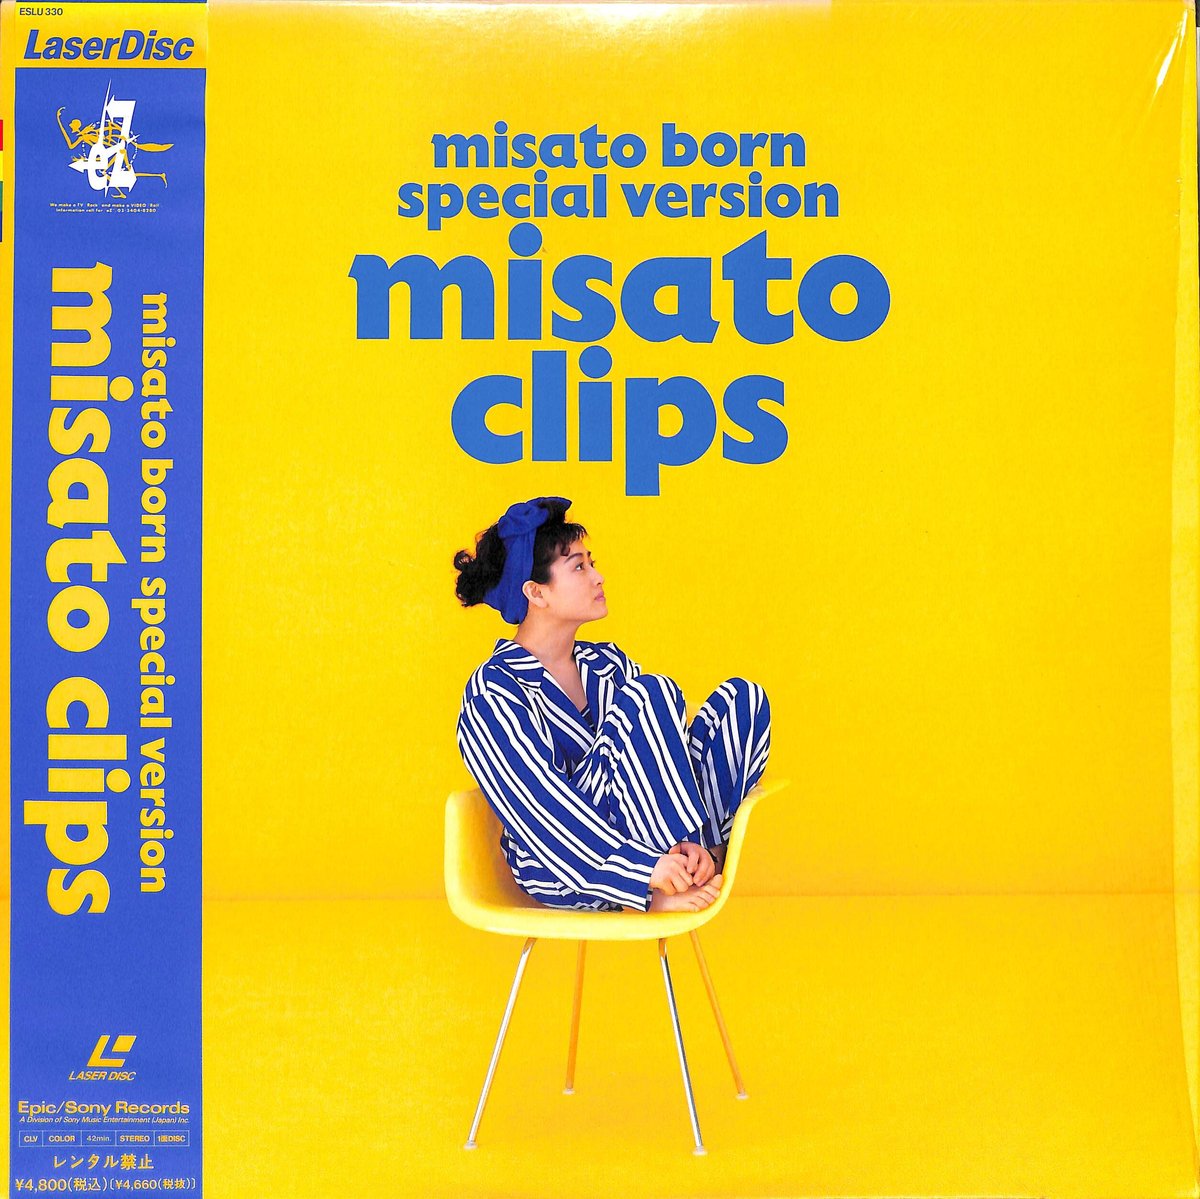 渡辺美里 / Misato Born Special Version Misato Clips